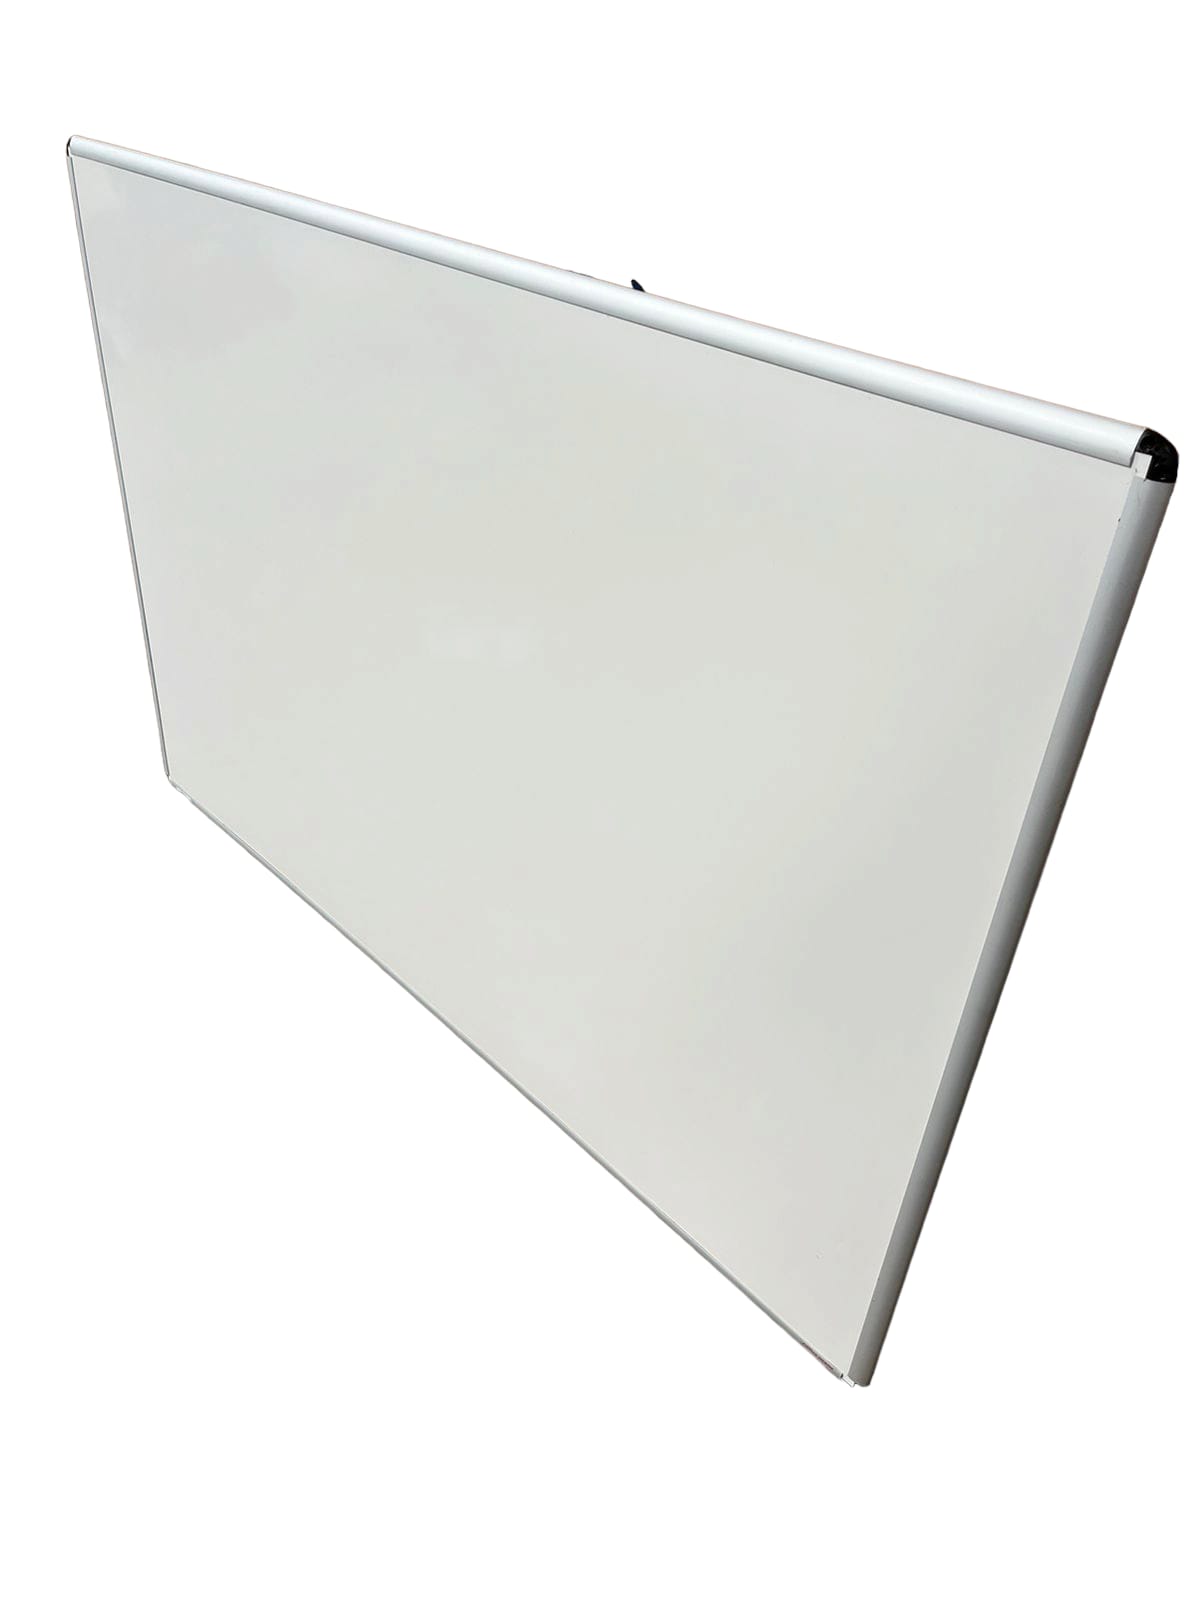 Tableau blanc chromé fixation mural magnétique 60x90cm - Mobilier Bureau Pro